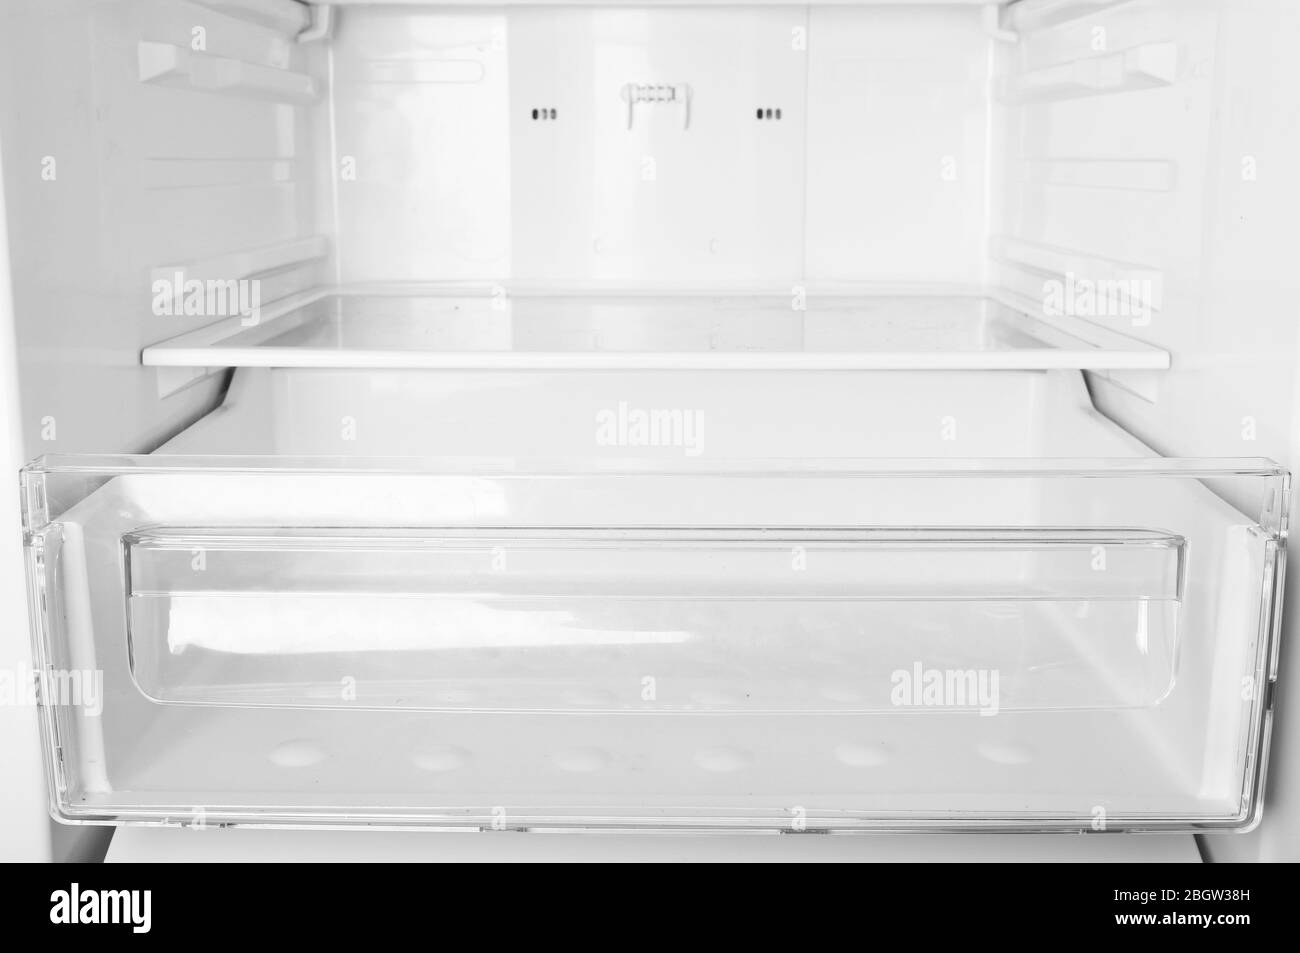 Empty refrigerator shelves closeup Stock Photo